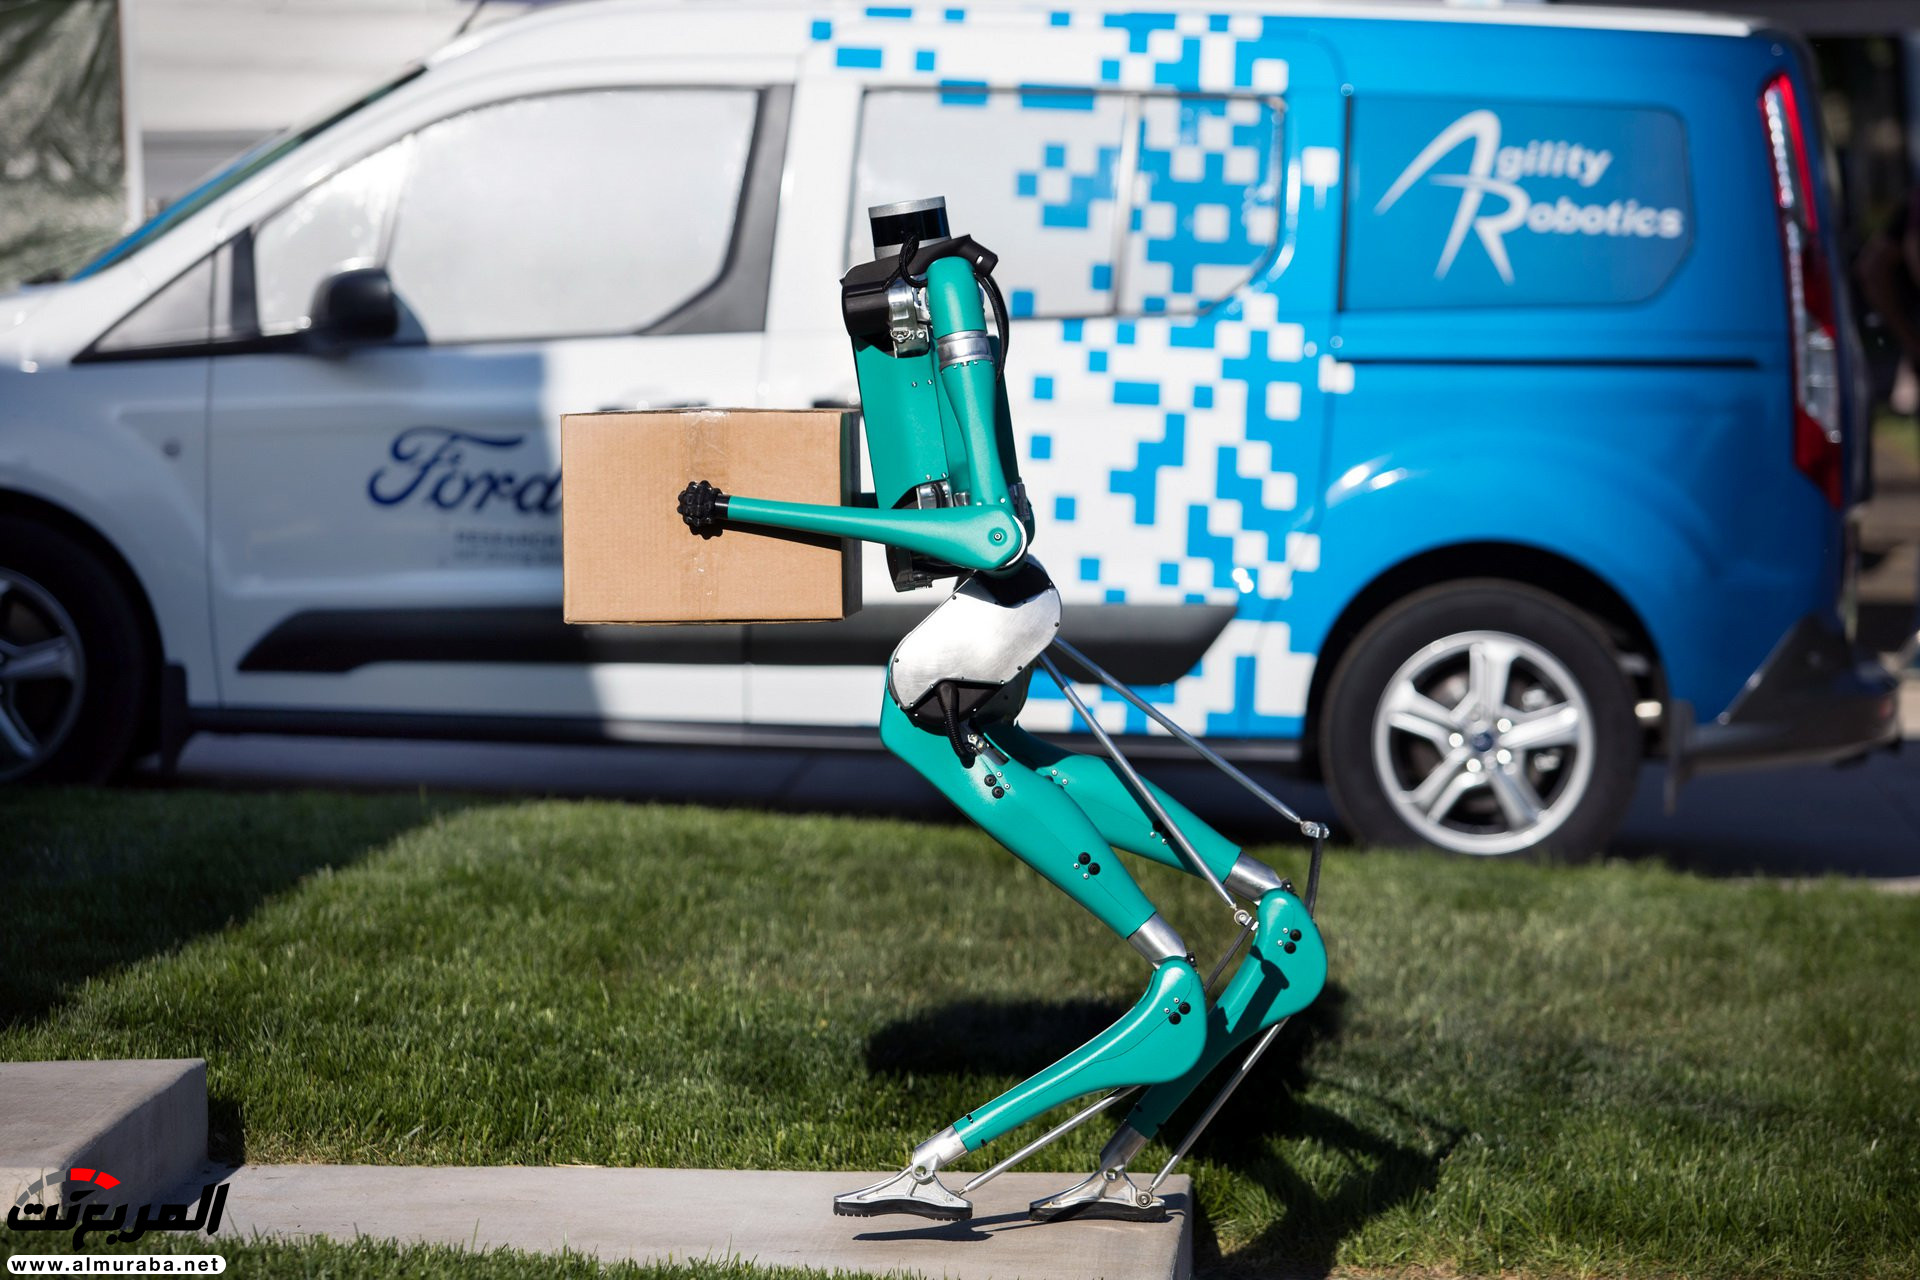 "بالفيديو والصور" فورد طورت روبوت يوصّل الطلبيات للمنازل 29